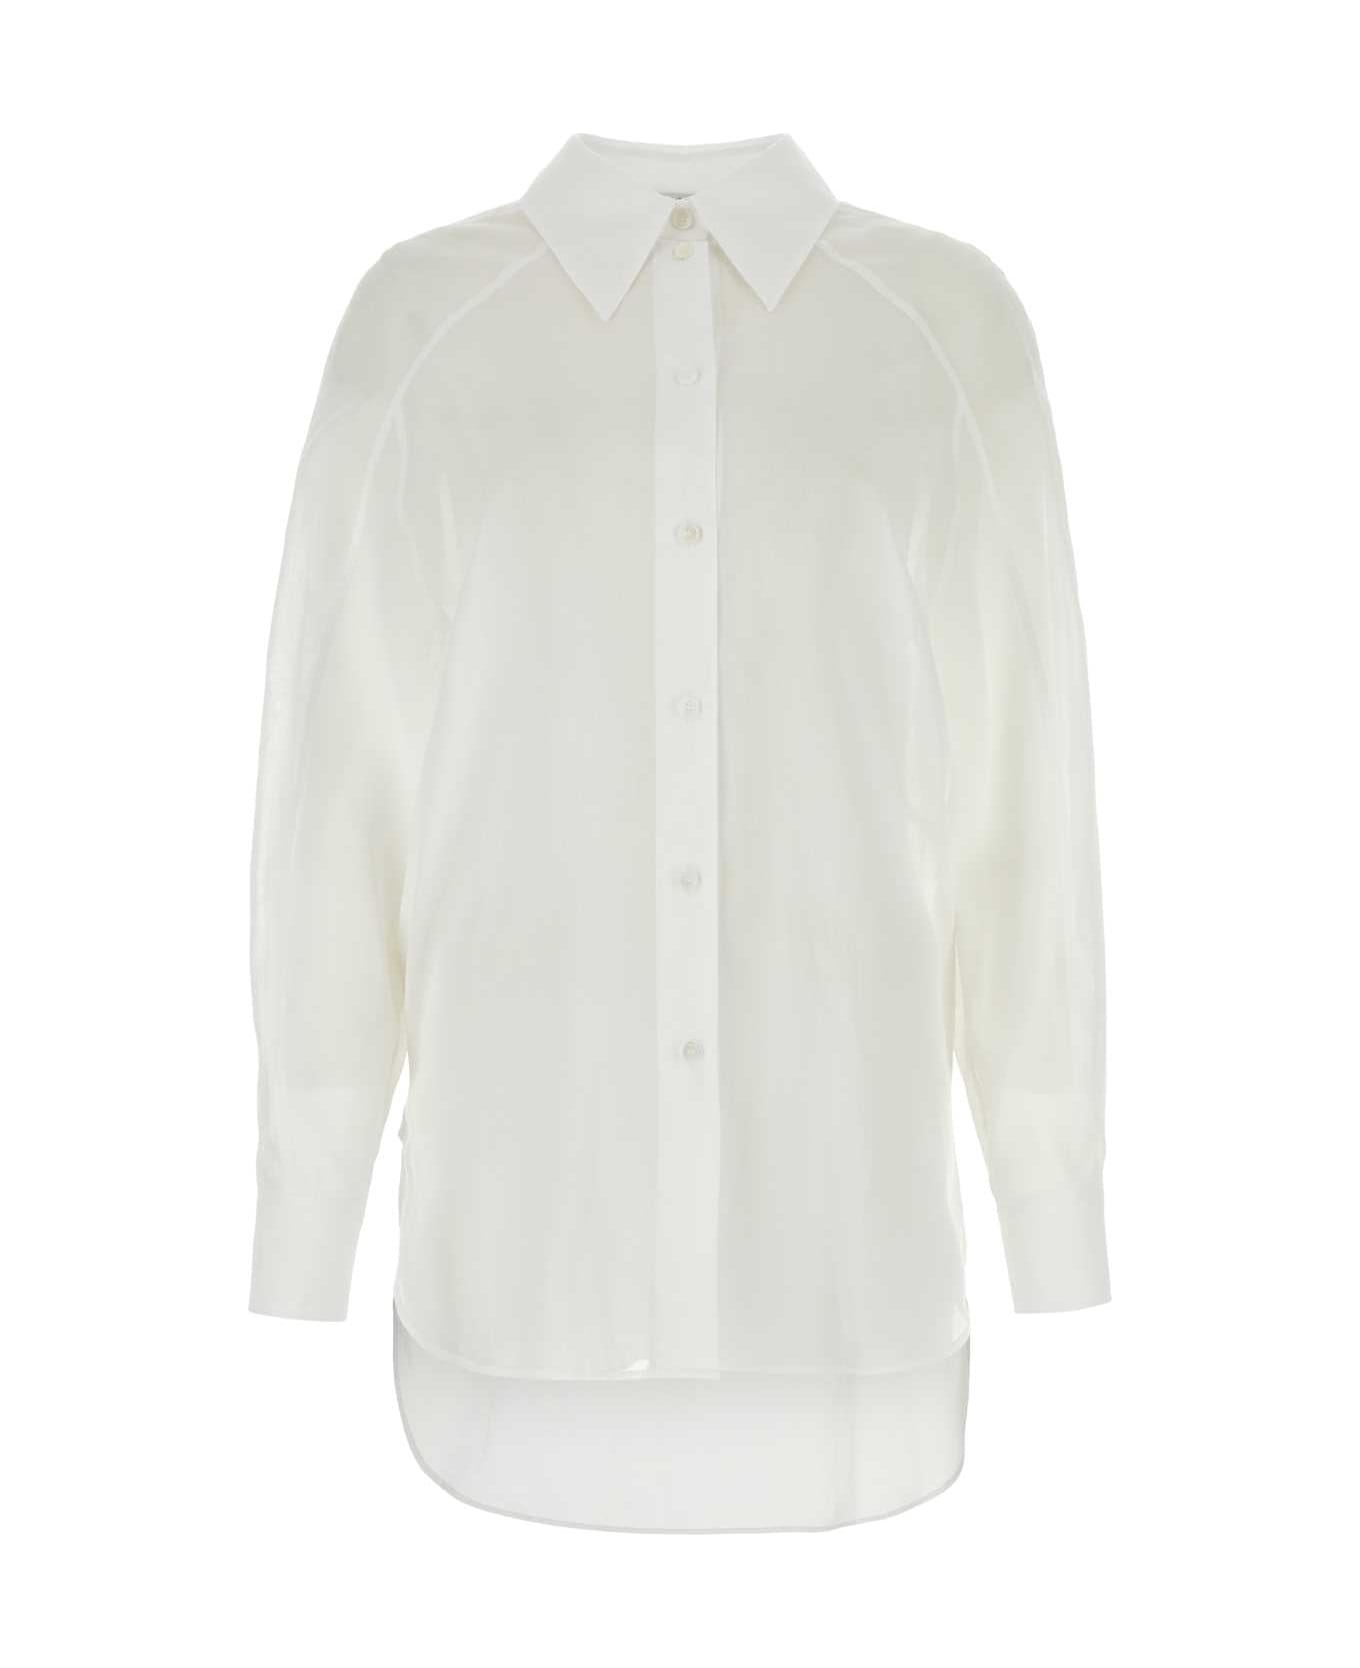 Alberta Ferretti White Cotton Shirt - BIANCO シャツ